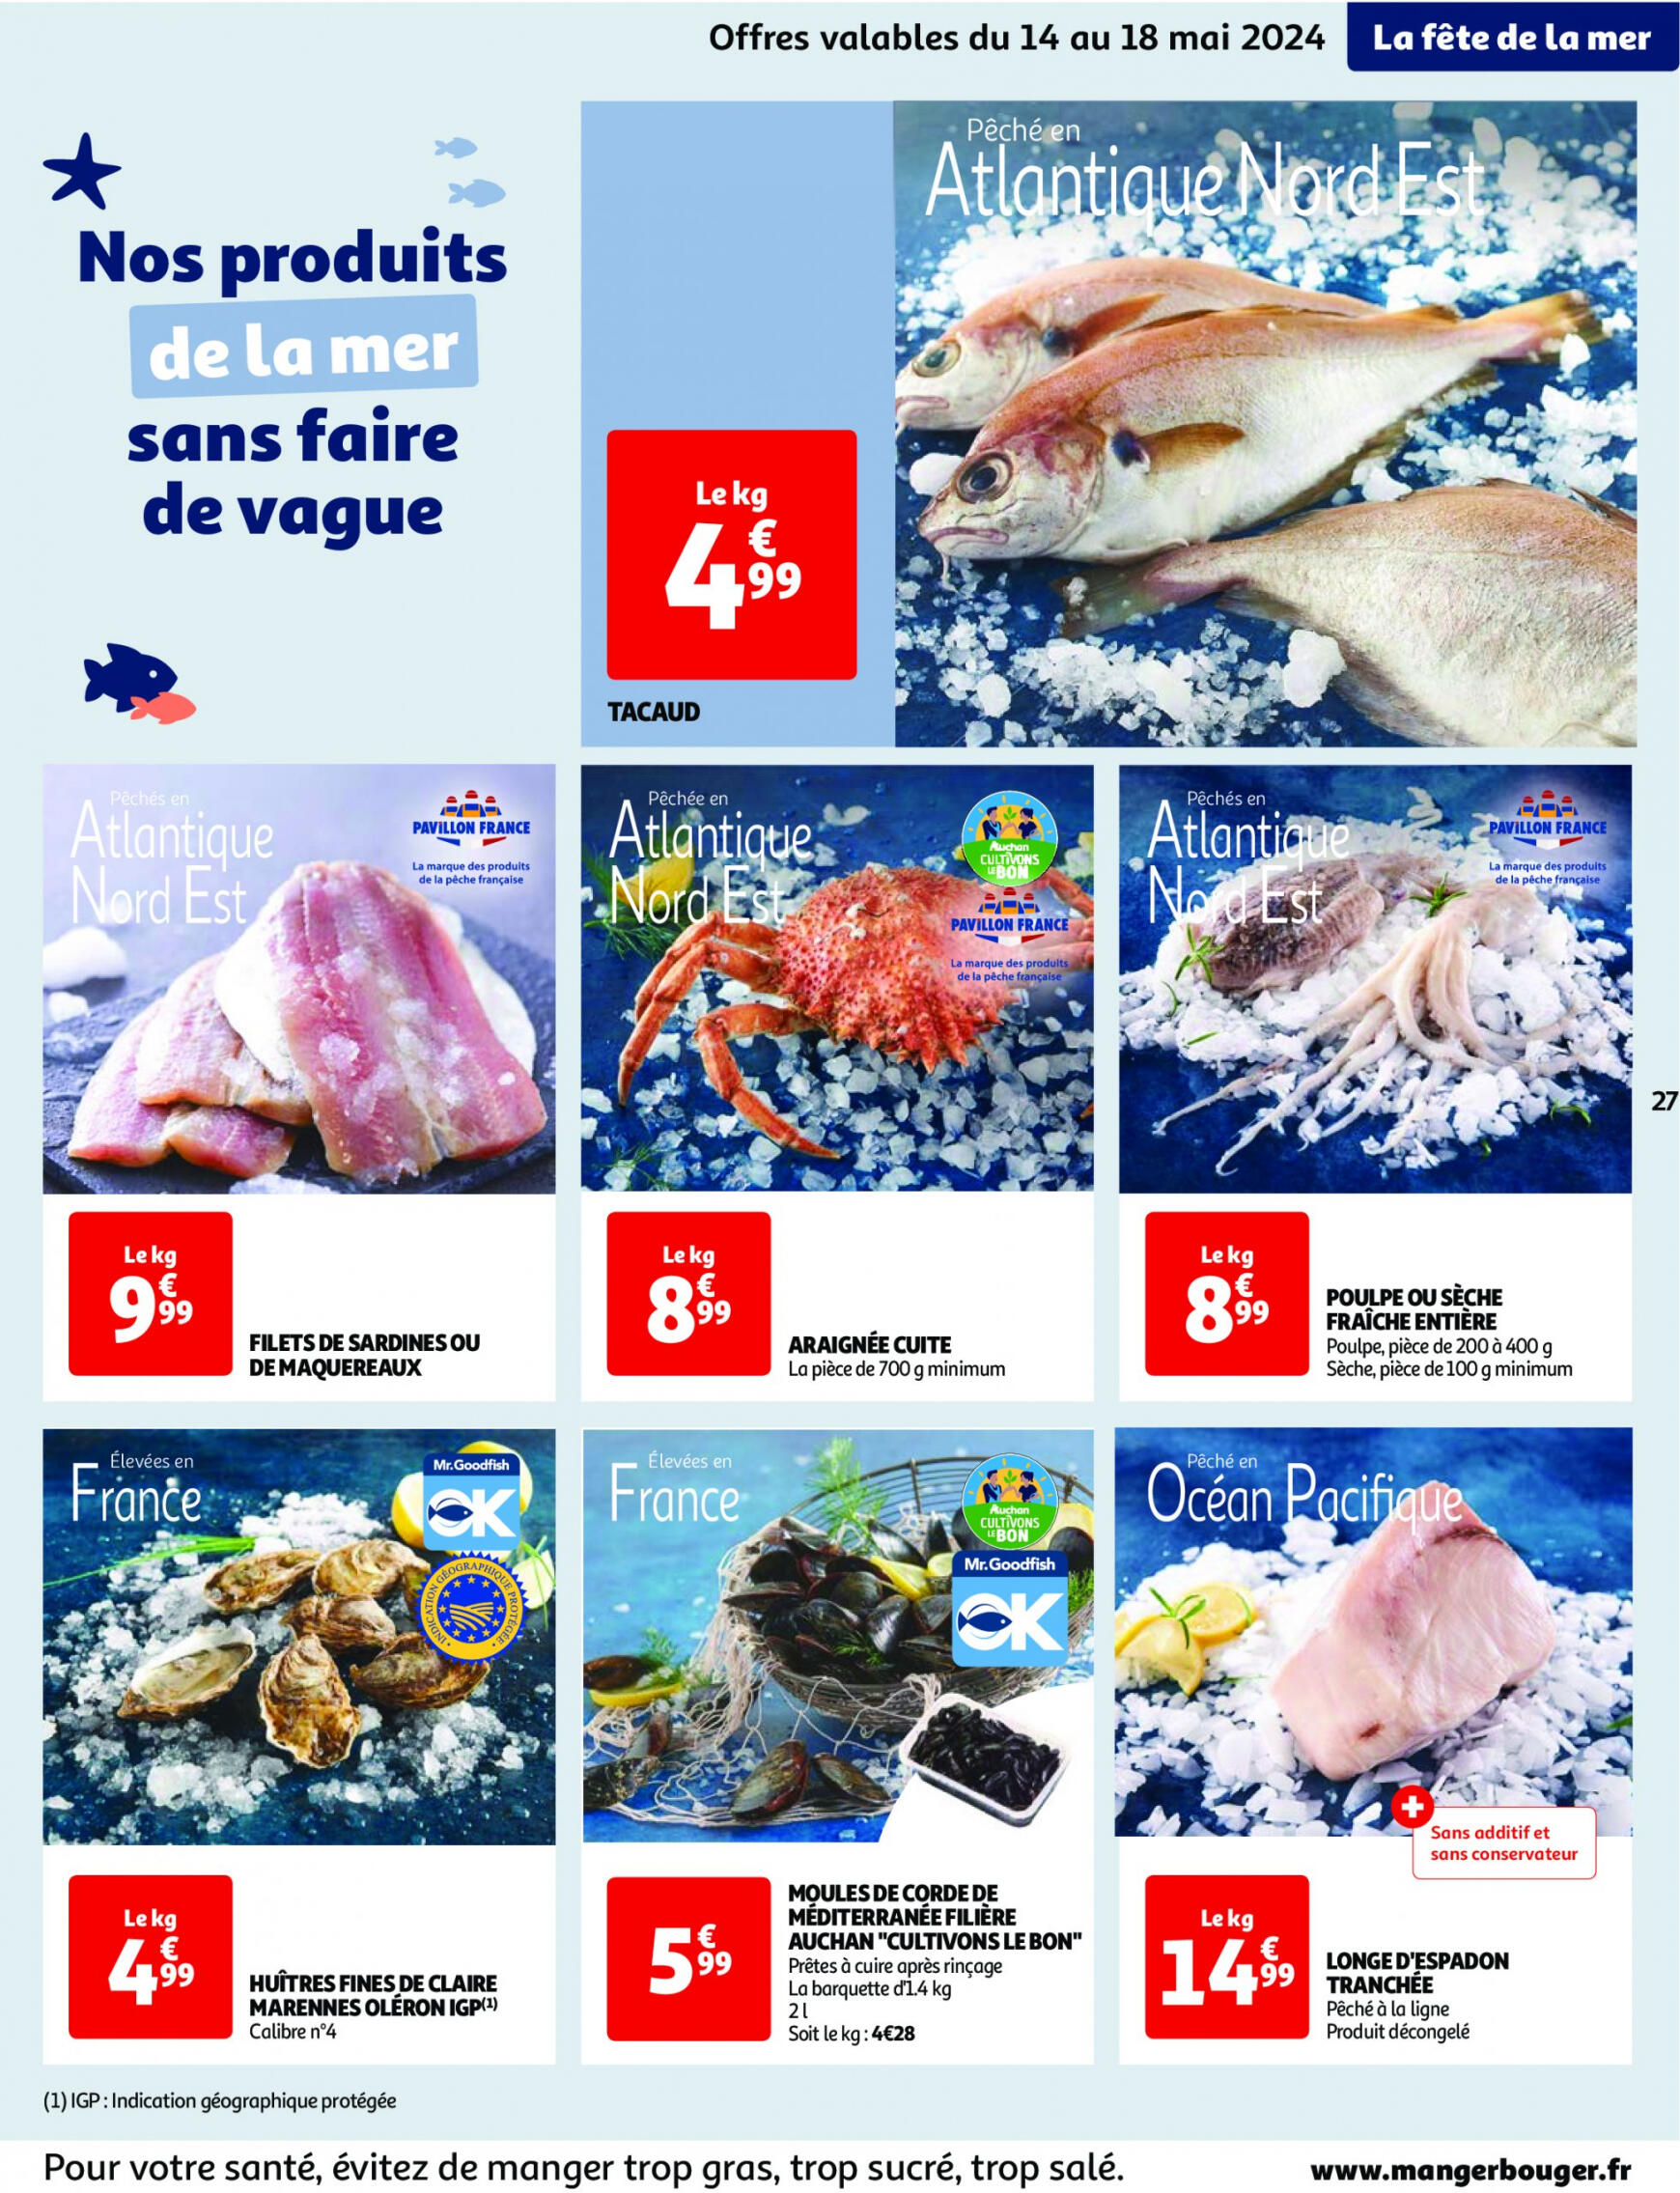 auchan - Prospectus Auchan actuel 14.05. - 21.05. - page: 27